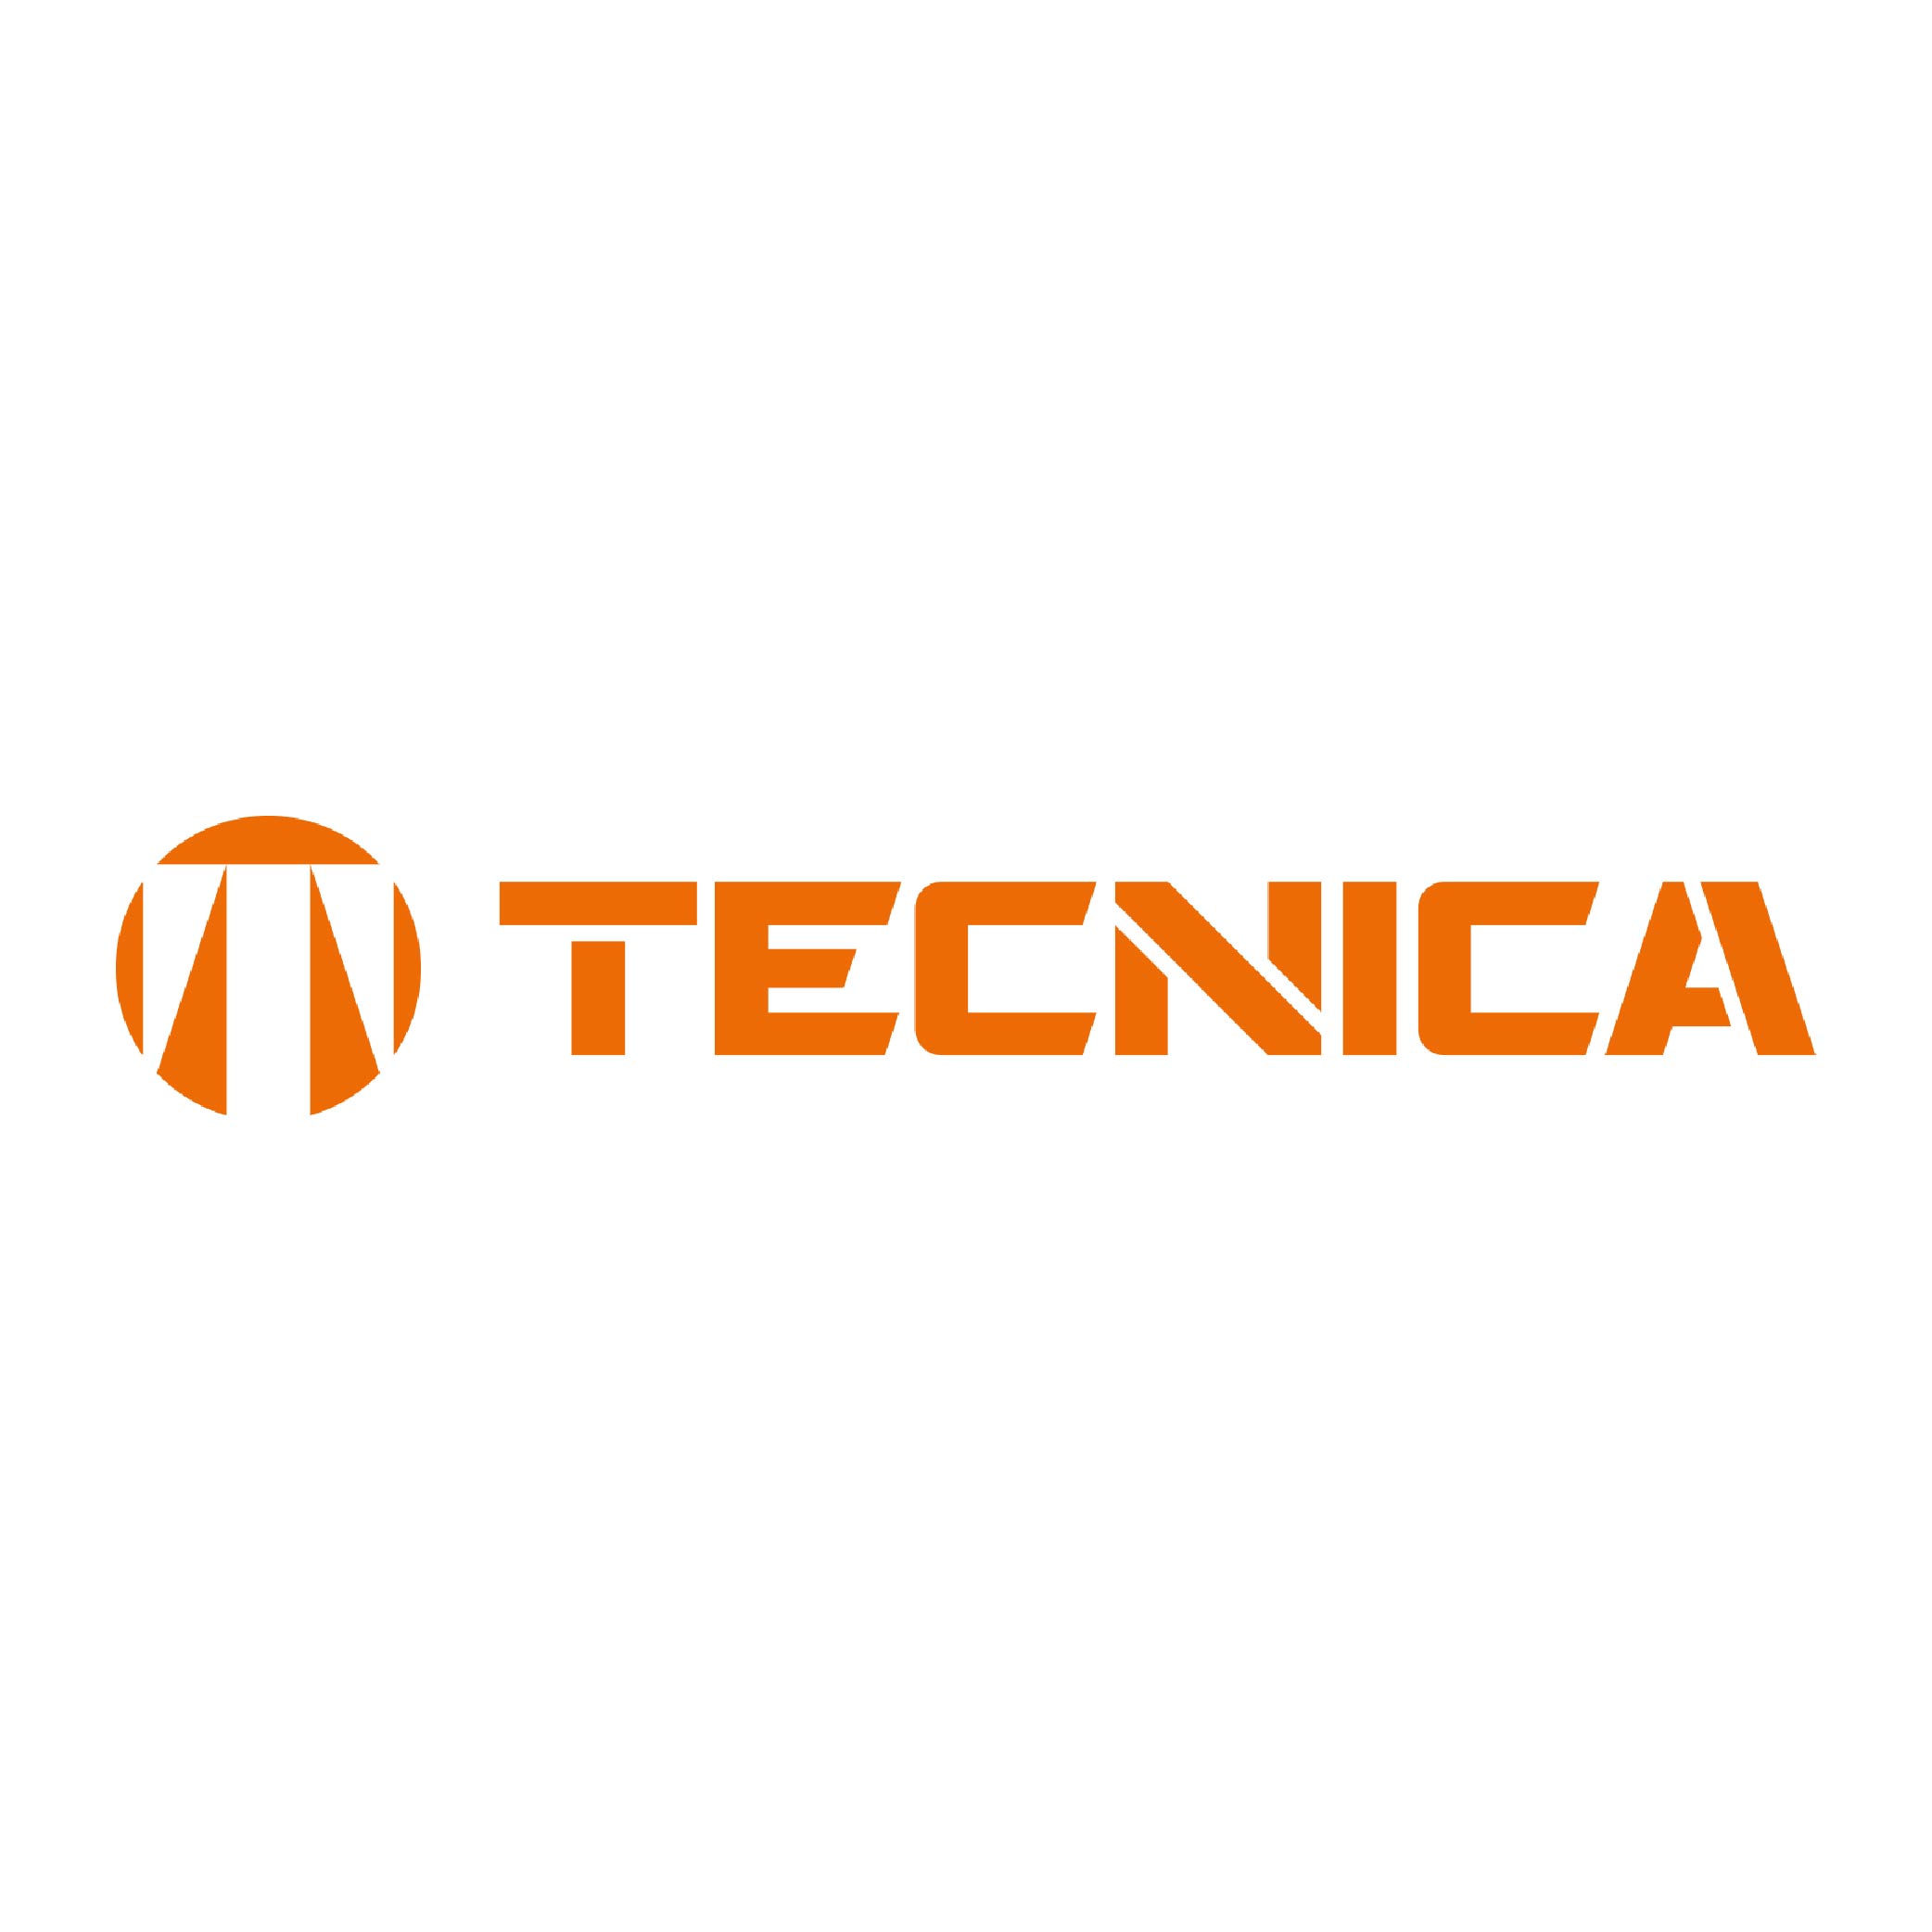 Tecnica logo